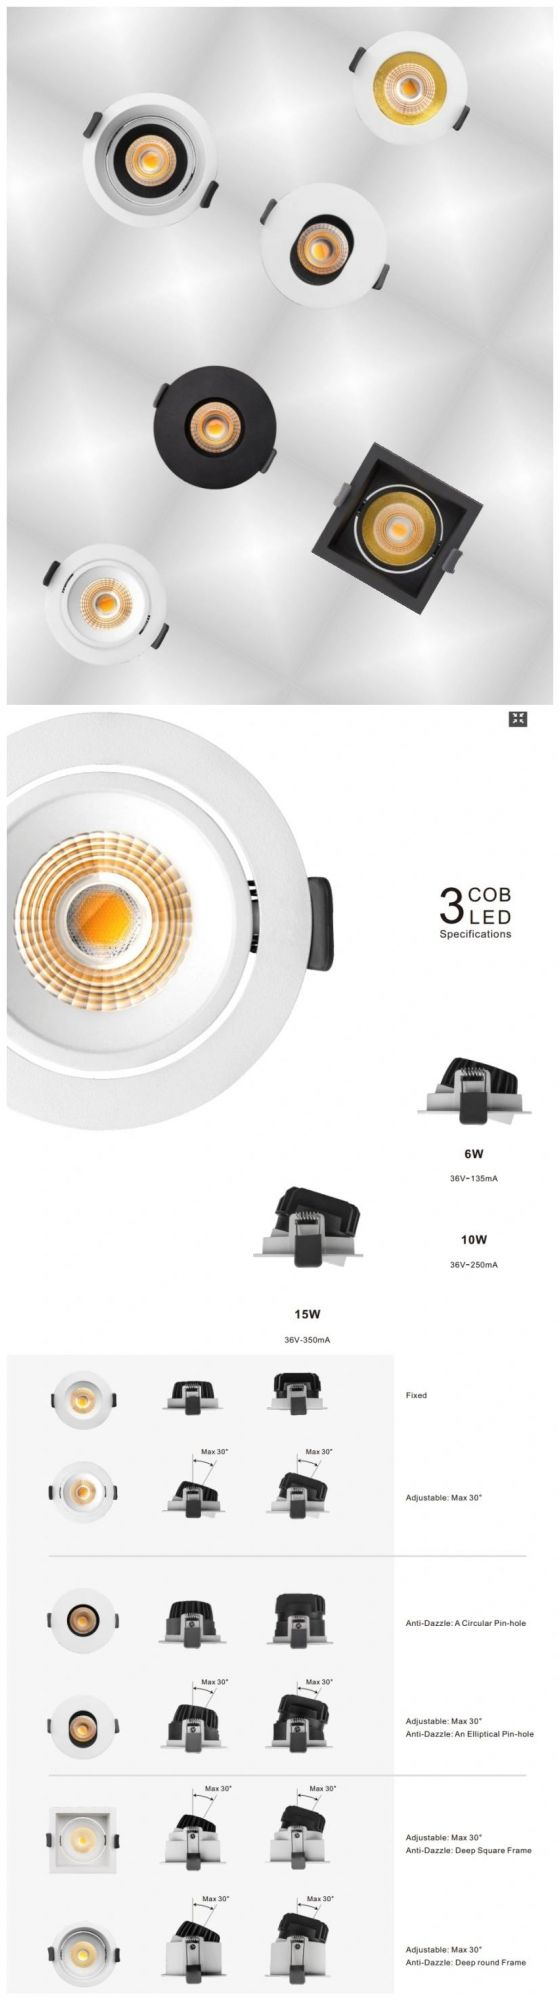 R6914 230V Fixed Downlight LED Down Light for Restaurant